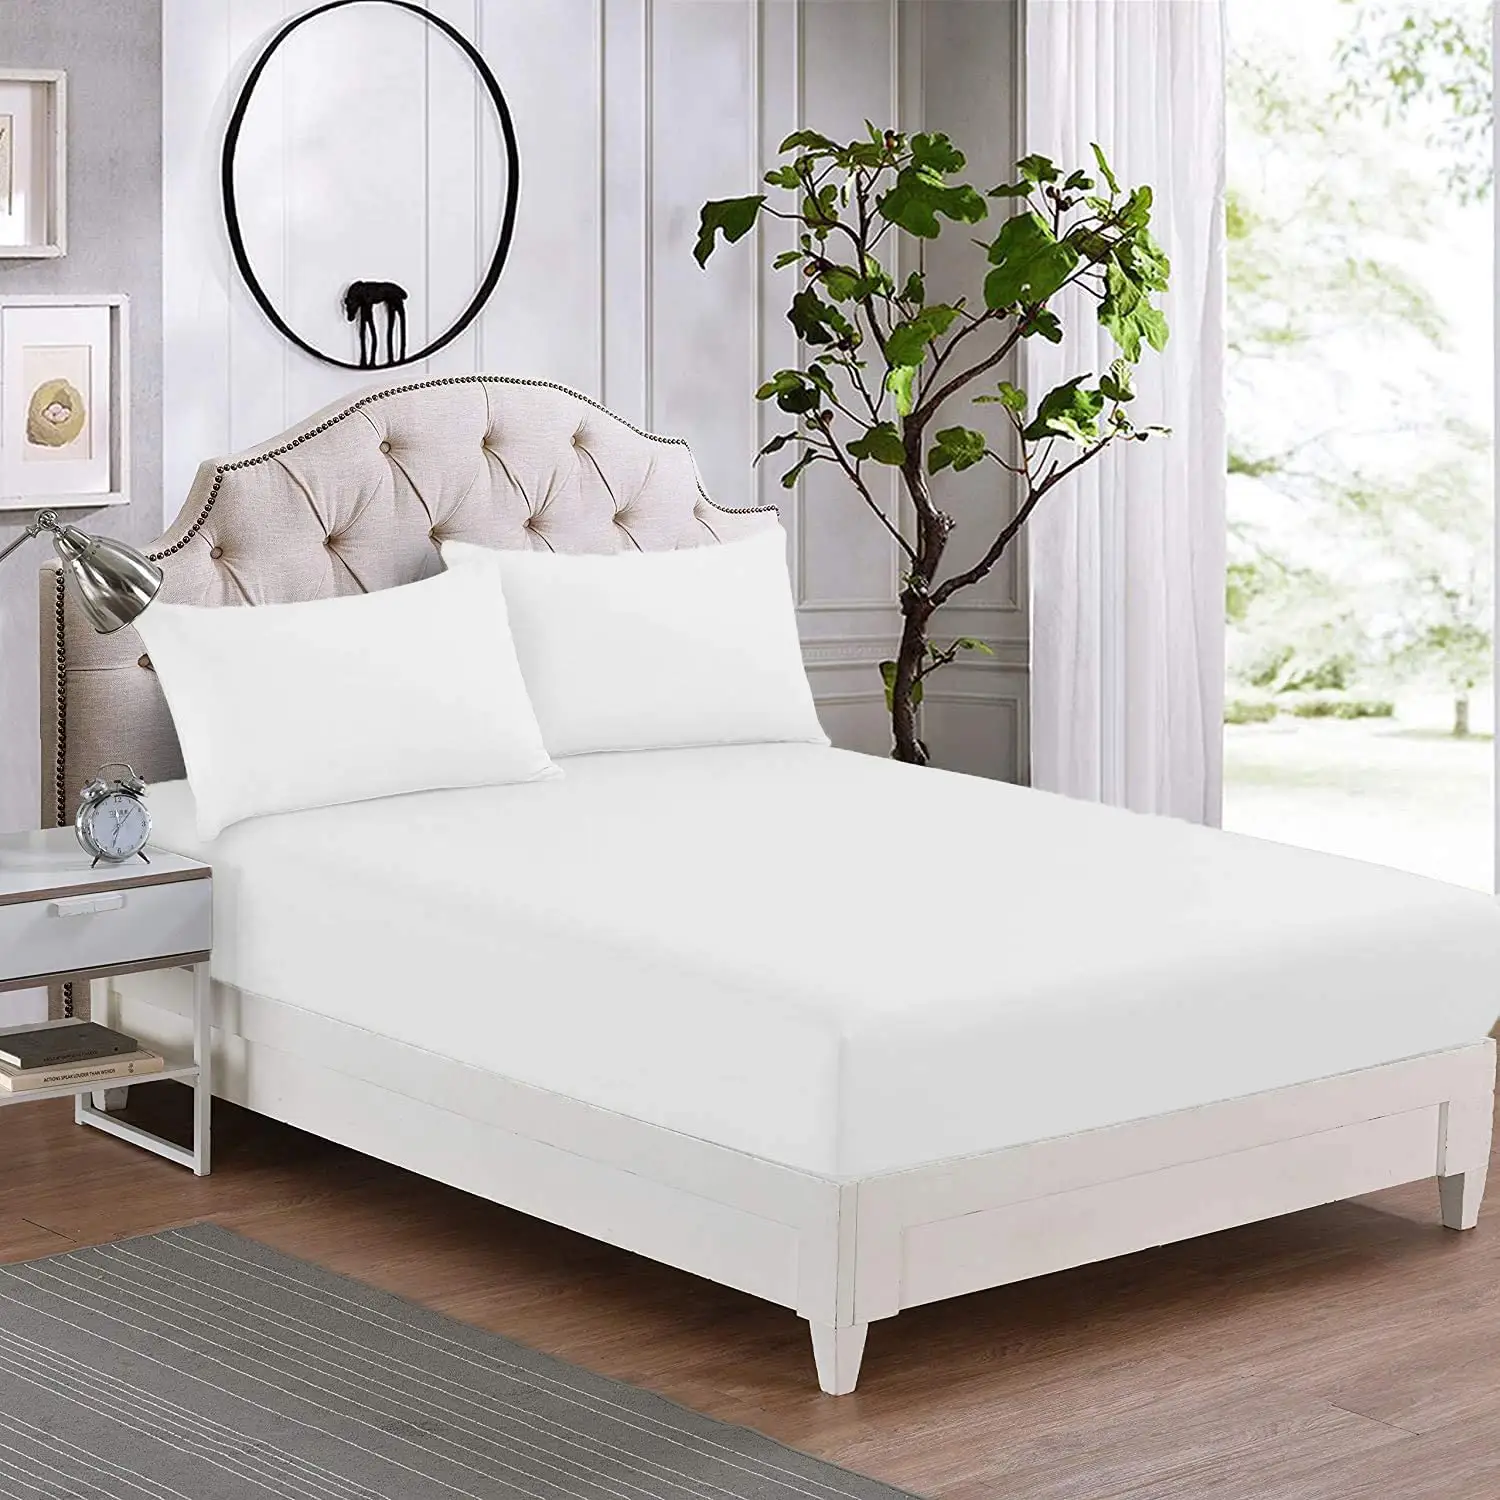 ผ้าปูเตียง Percale เกรด180,เตียงขนาดพอดีเตียงนอนคุณภาพสูงสำหรับโรงแรม